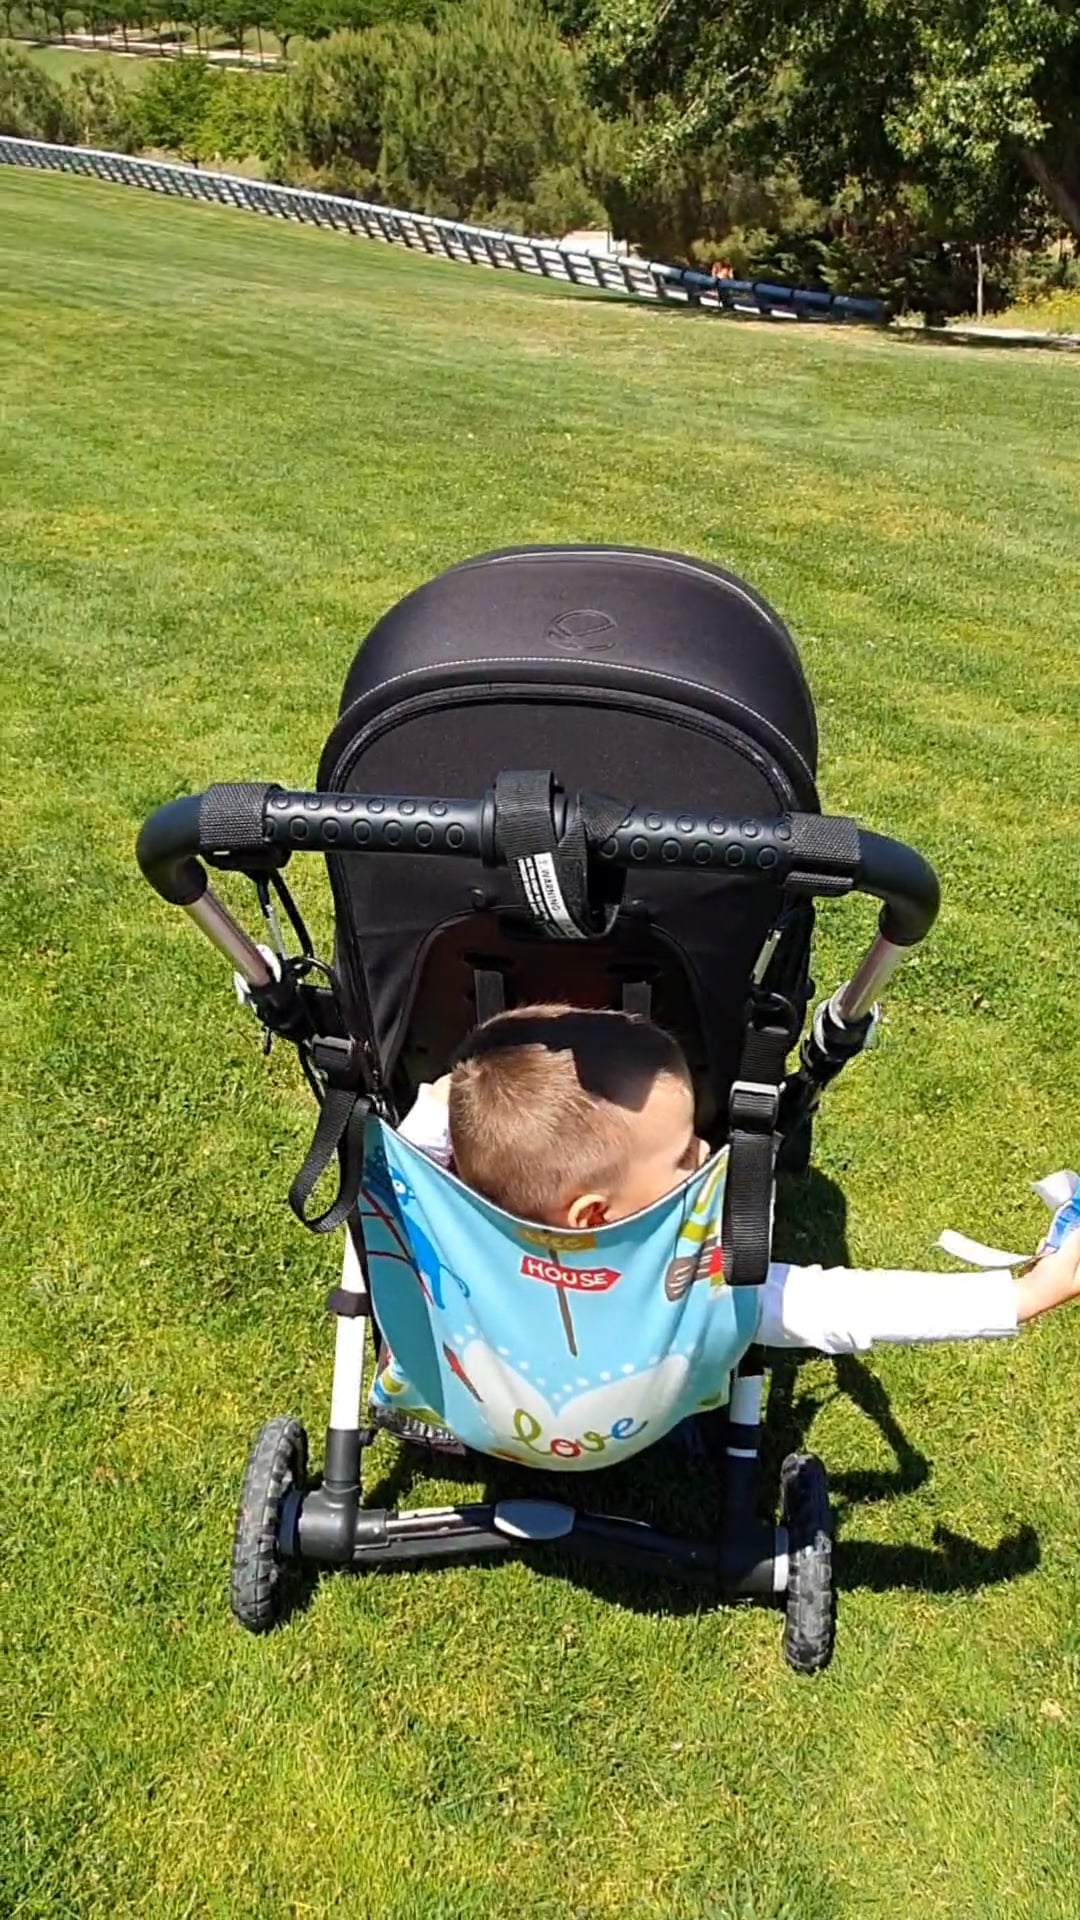 Oferta Amababy de carro bebé a silla gemelar fácil y rápido